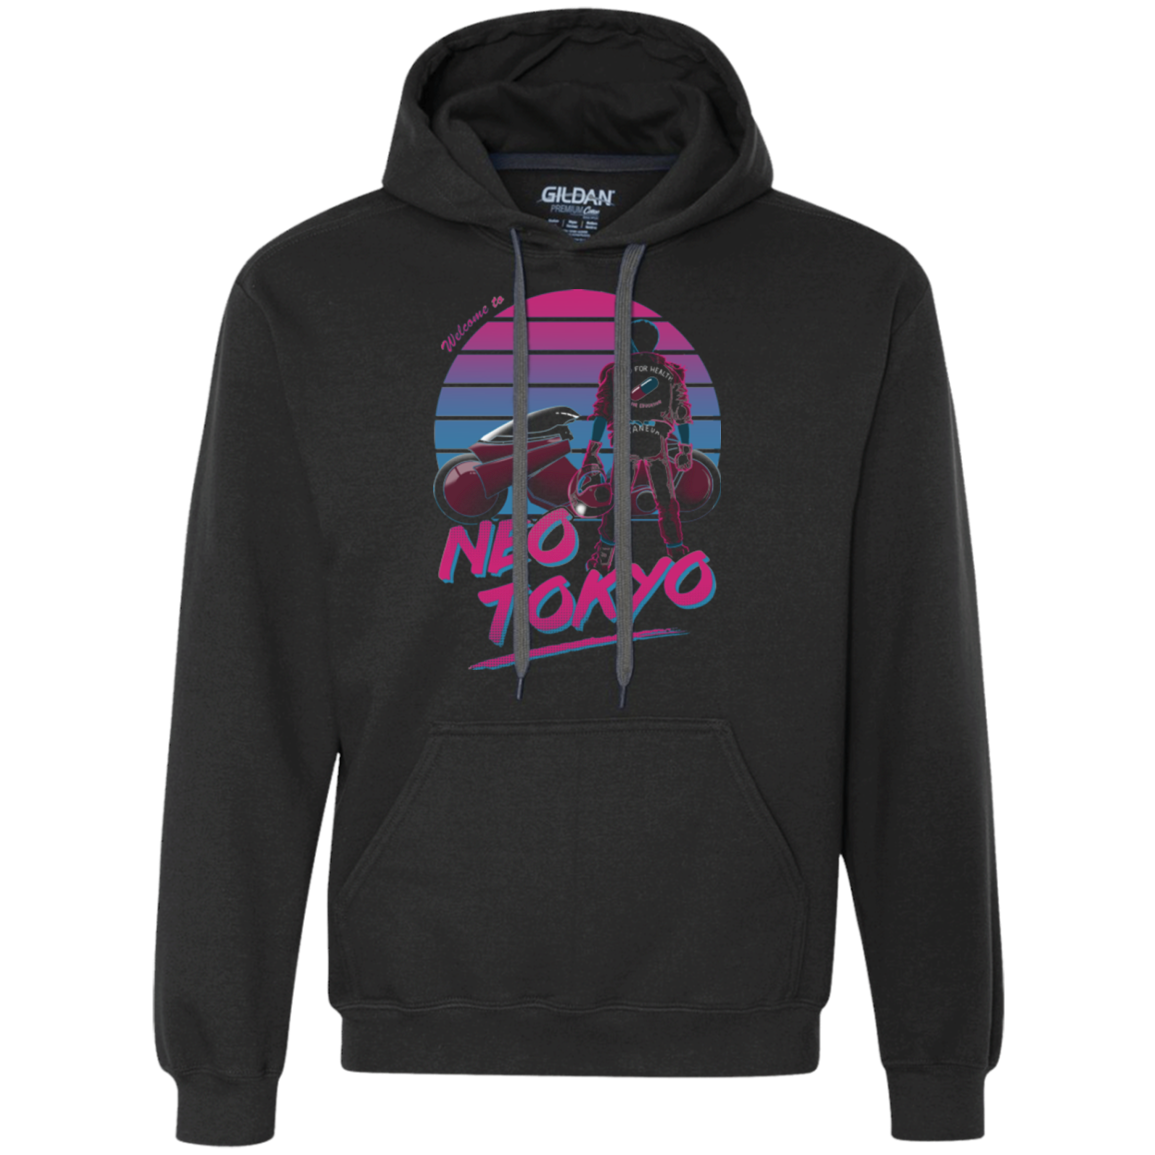 Welcome to Neo Tokyo Premium Fleece Hoodie